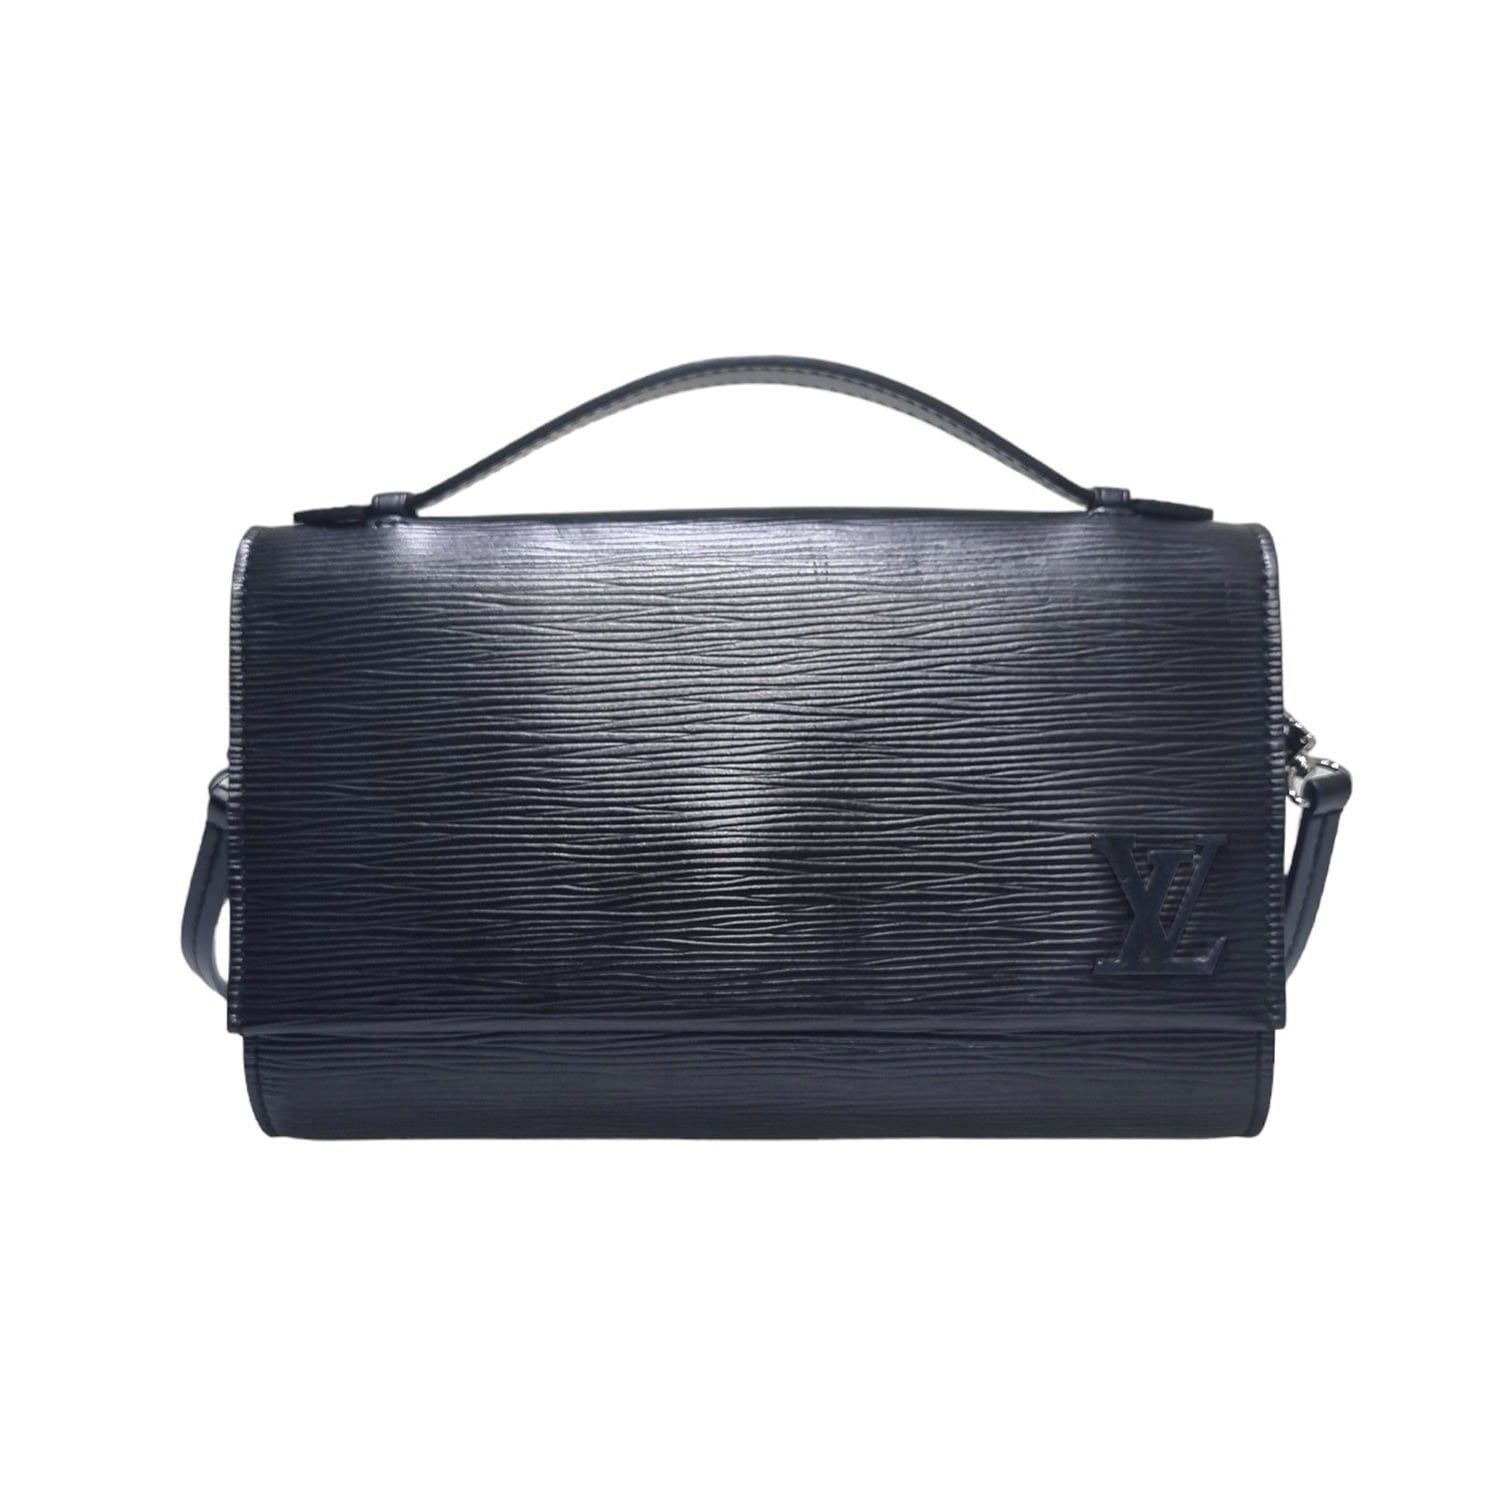 Sac plat BB Epi Leather in Rose - Handbags M58659